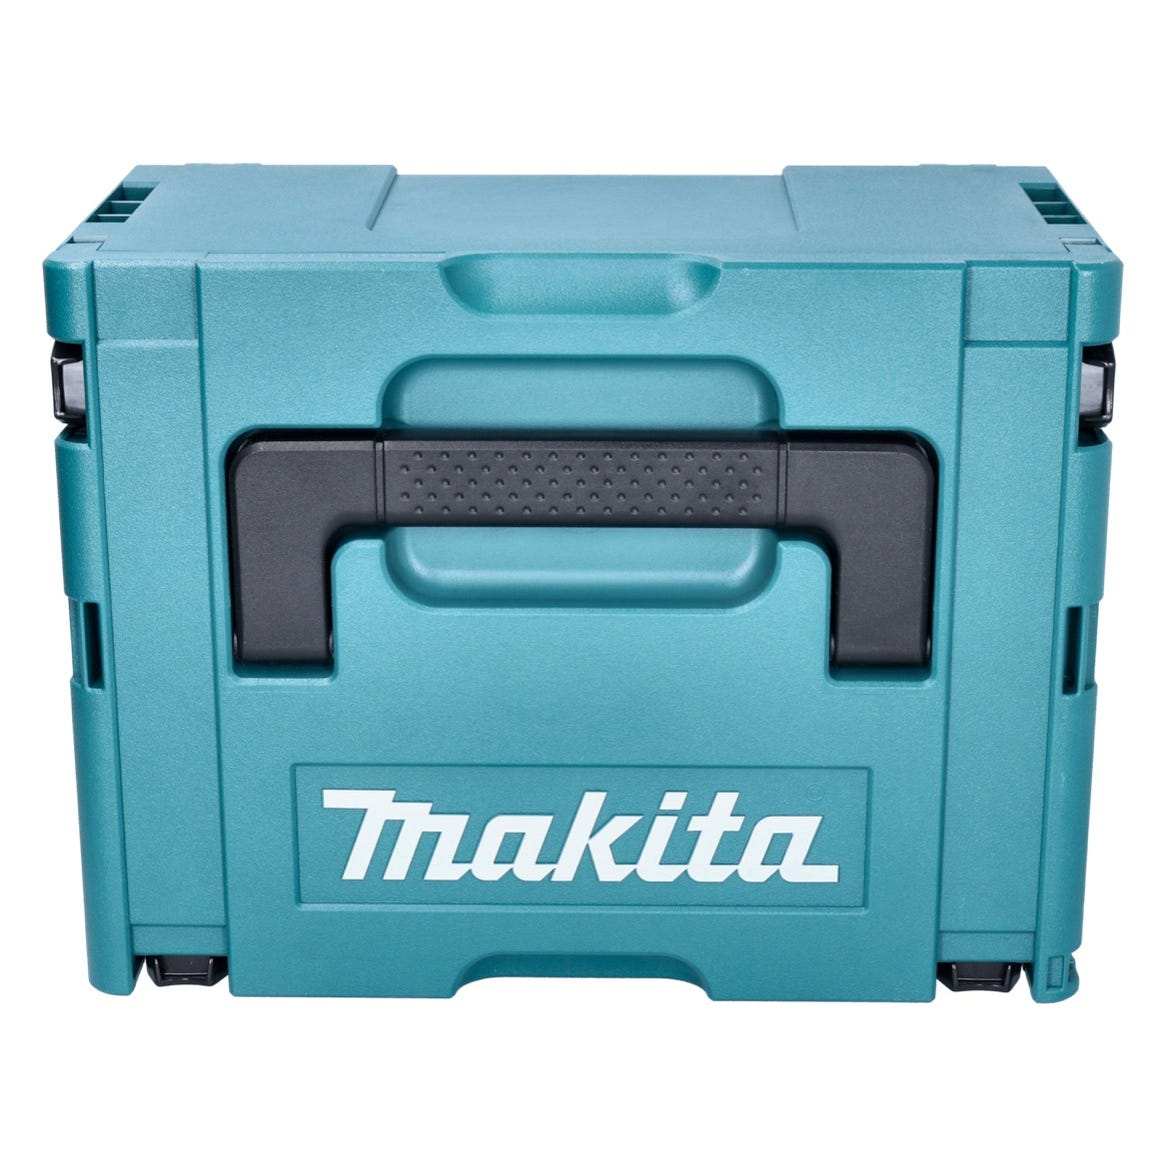 Makita DJS 200 RTJ cisaille à batterie 18 V 2.0 mm sans balais + 2x batterie 5.0 Ah + chargeur + makpac 2